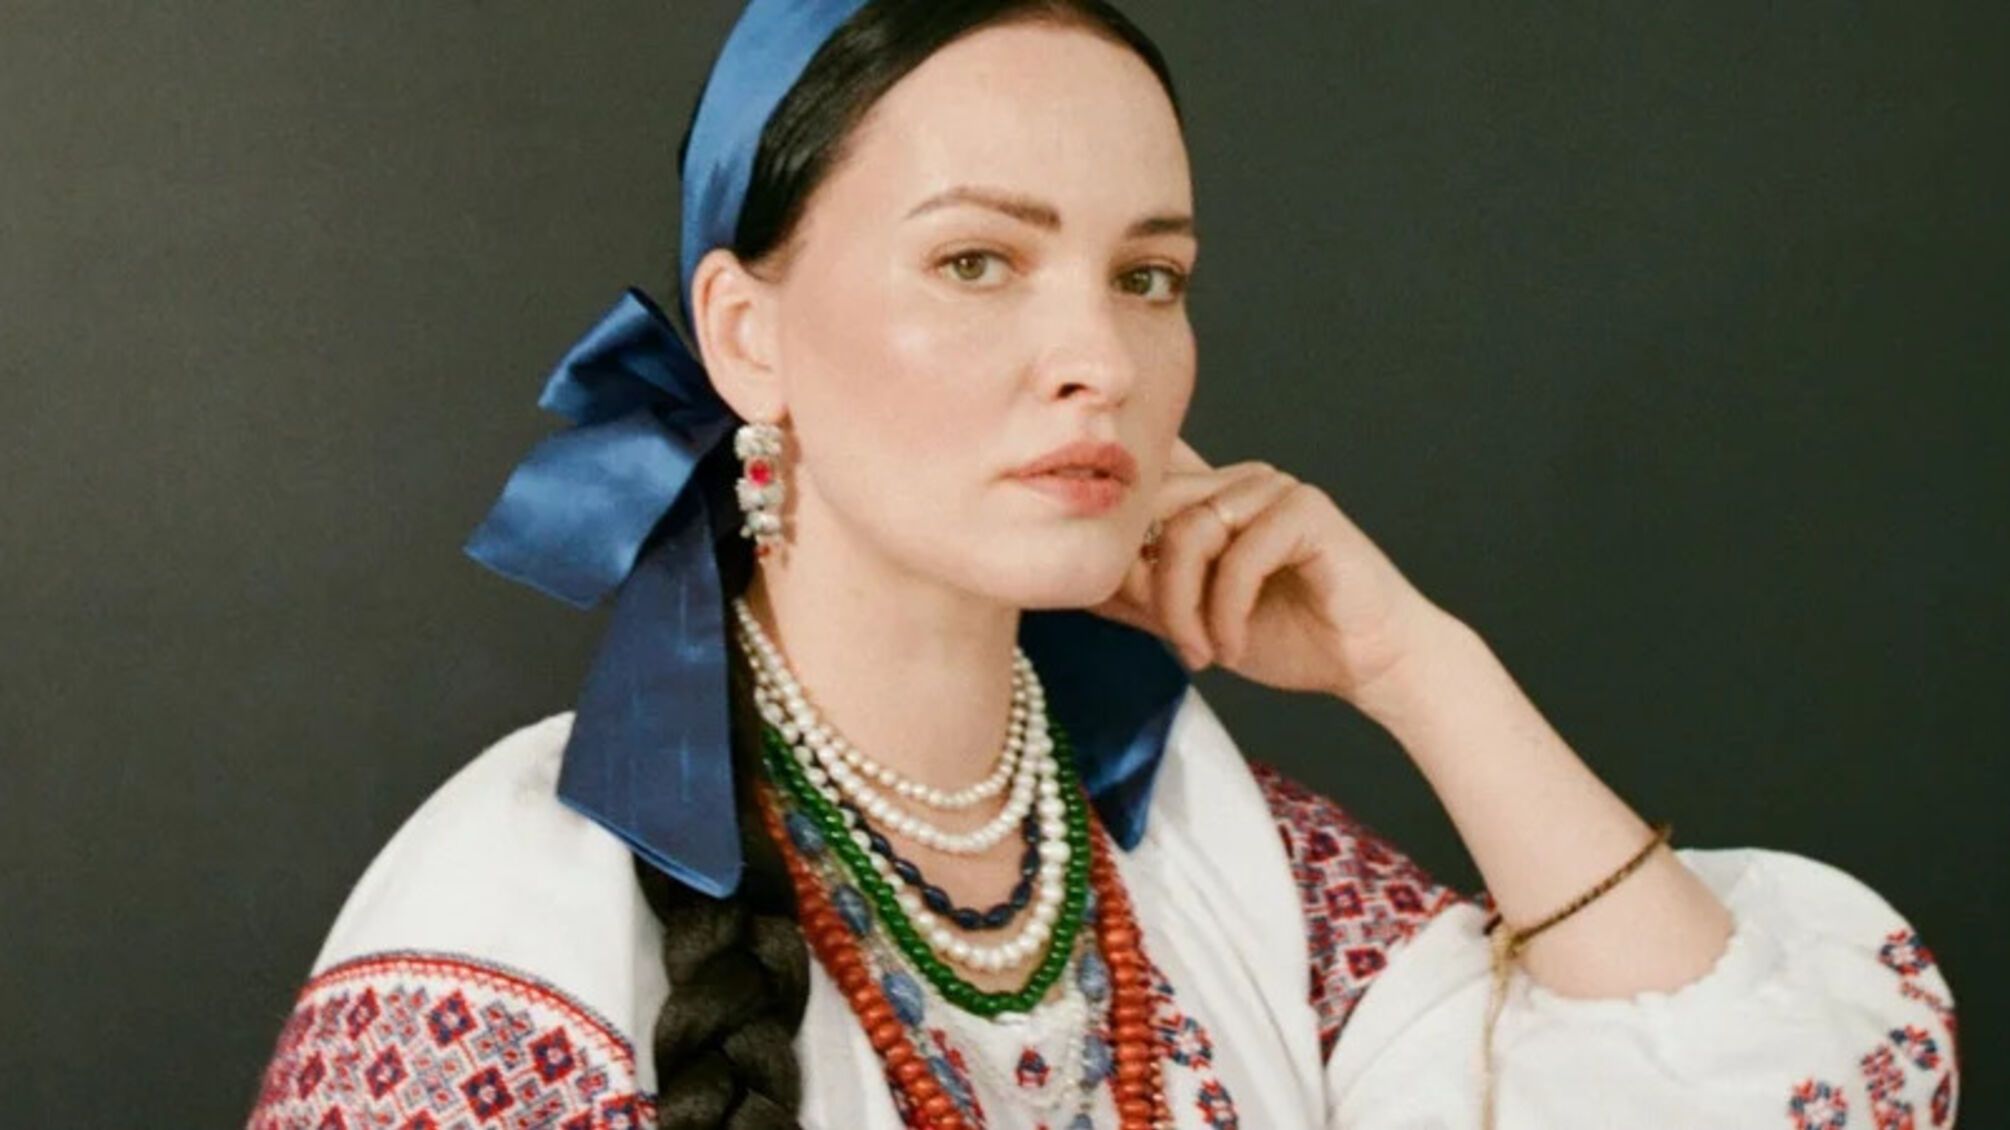 Даша Астафьева стала героиней воспроизведенной картины, похищенной россиянами из Херсонского музея